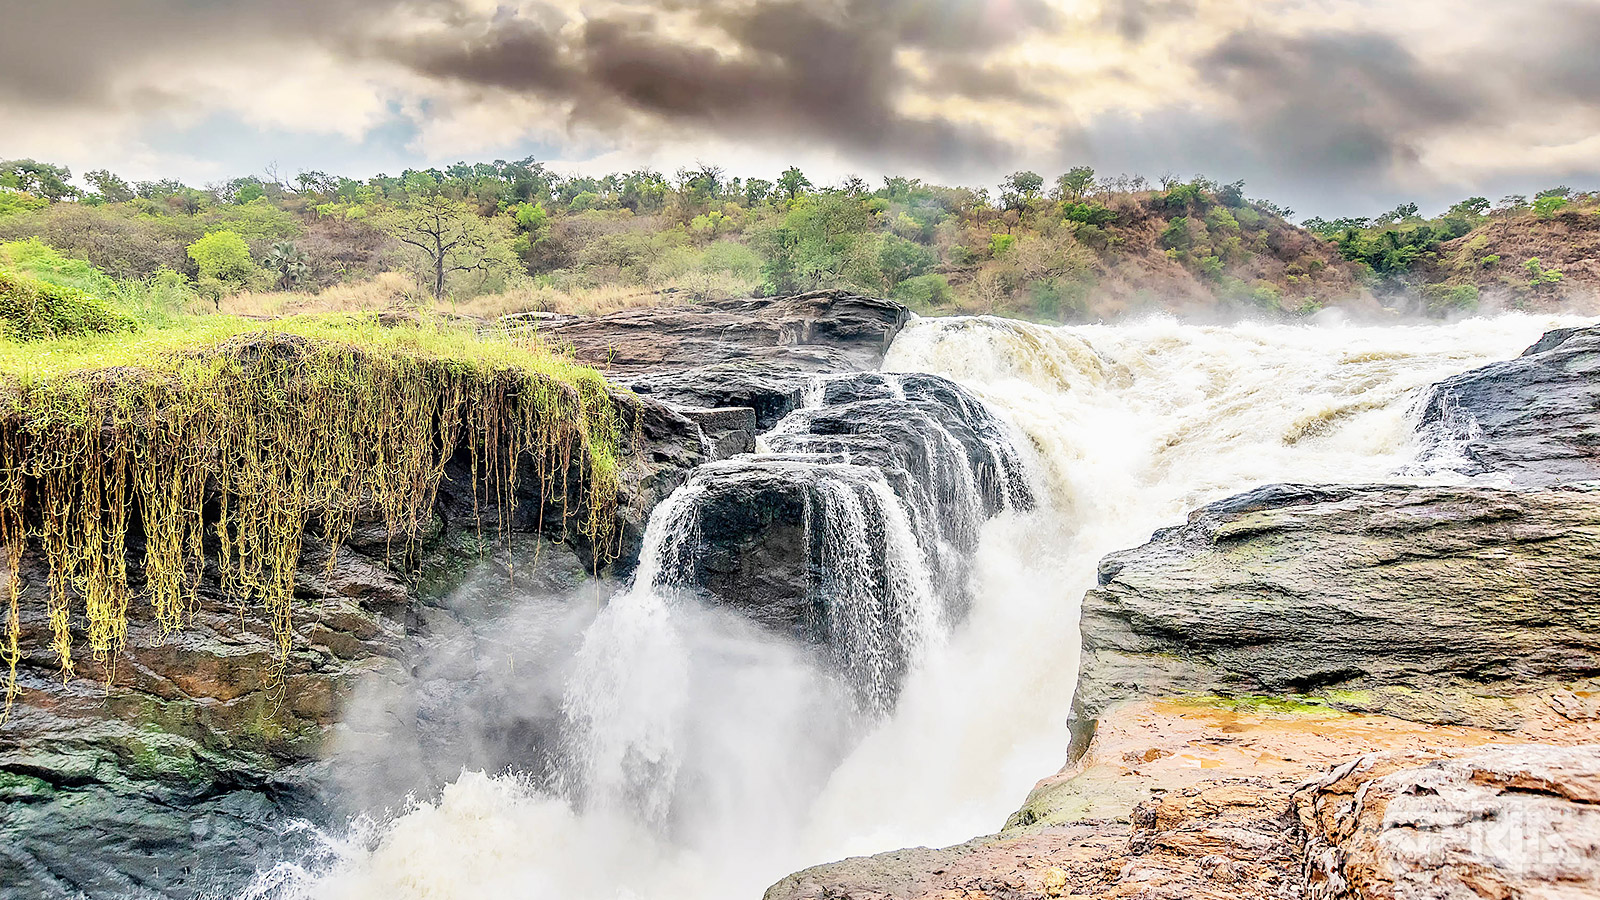 De Witte Nijl stroomt door het Murchison Falls Nationaal Park en heeft verschillende watervallen en stroomversnellingen